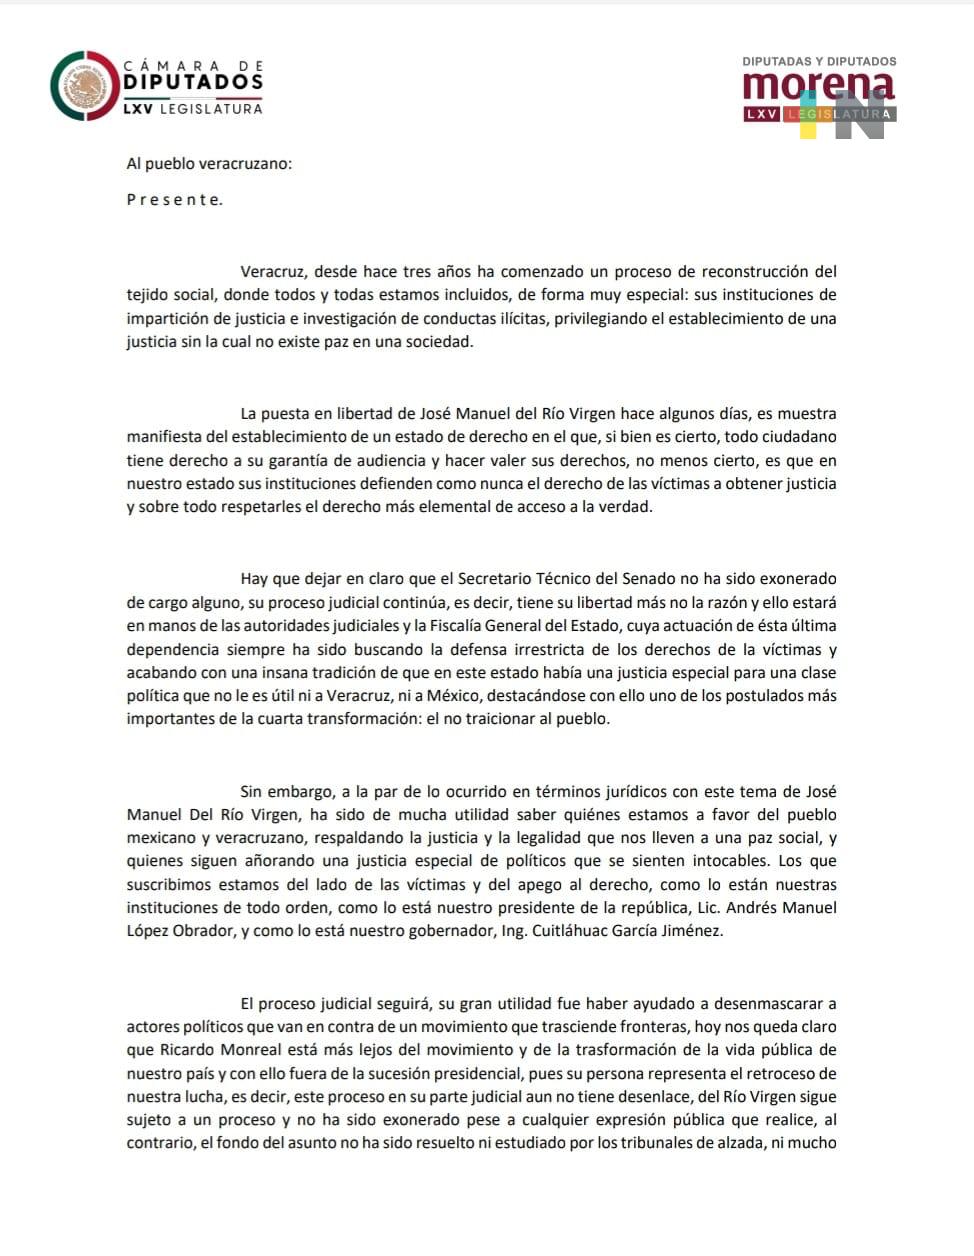 Diputados y diputadas federales respaldan a Cuitláhuac García en caso Del Río Virgen